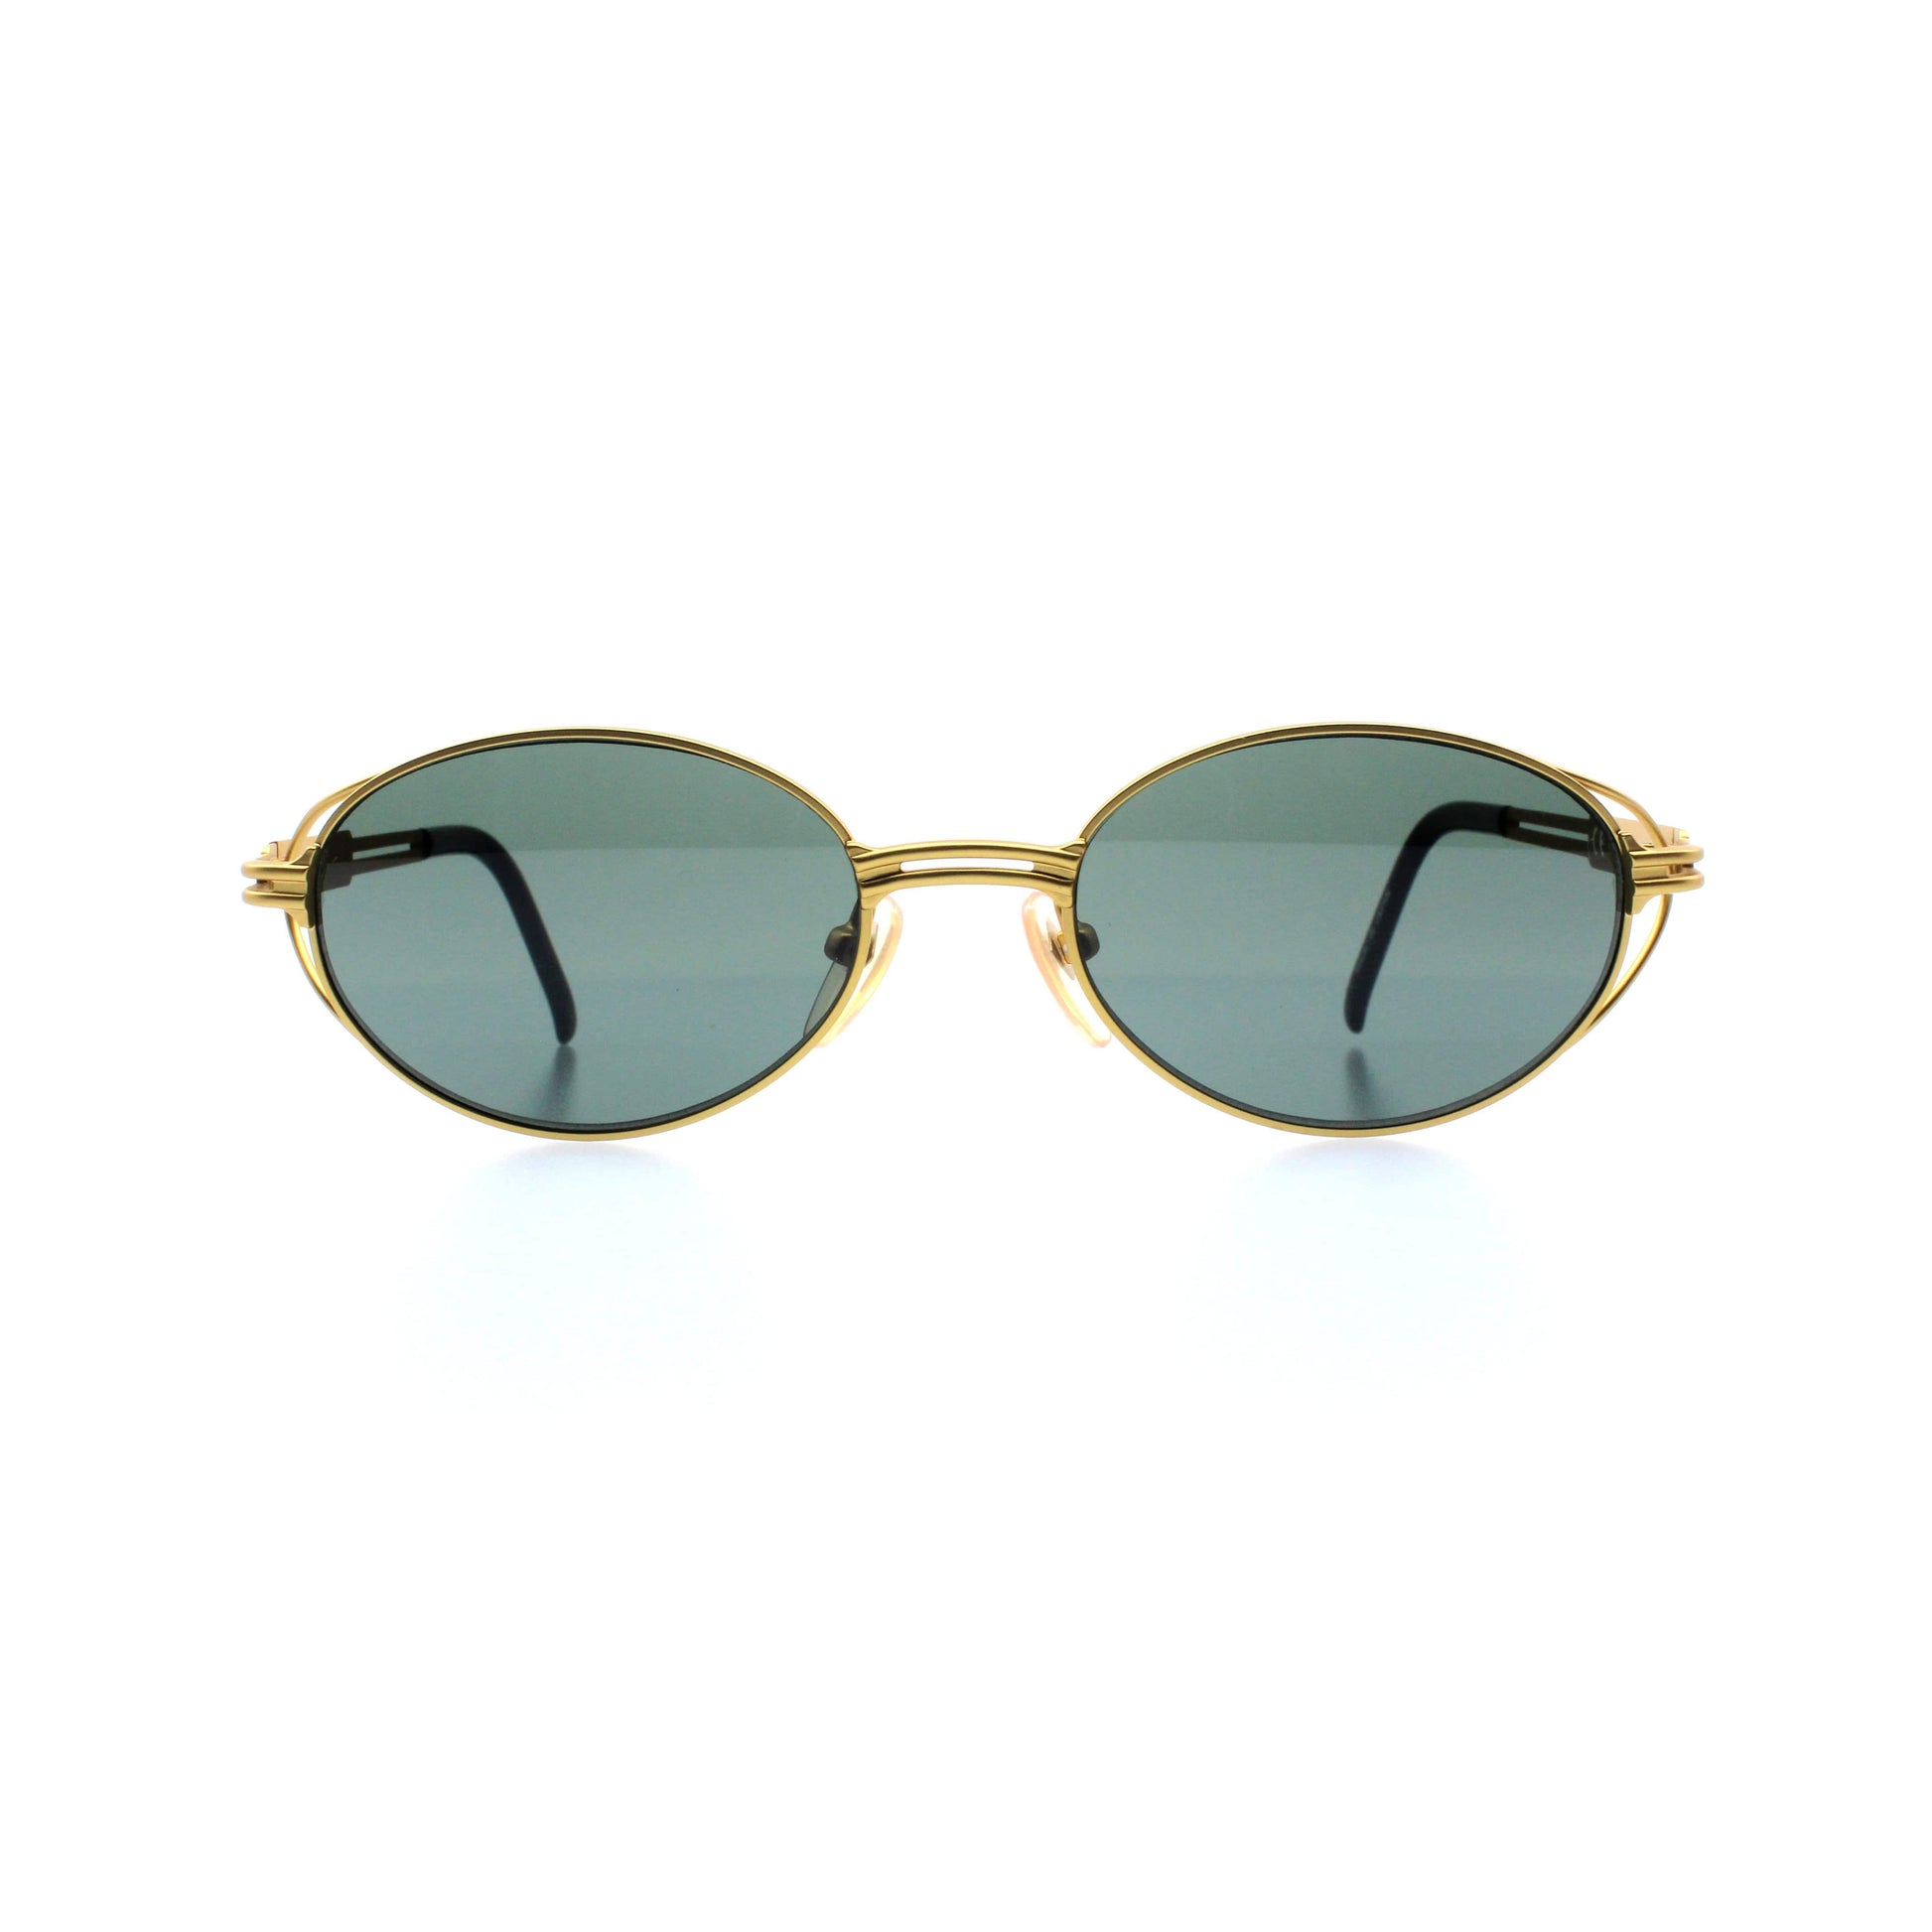 Gold Vintage Jean Paul Gaultier 58-6106 Sunglasses RSTKD Vintage